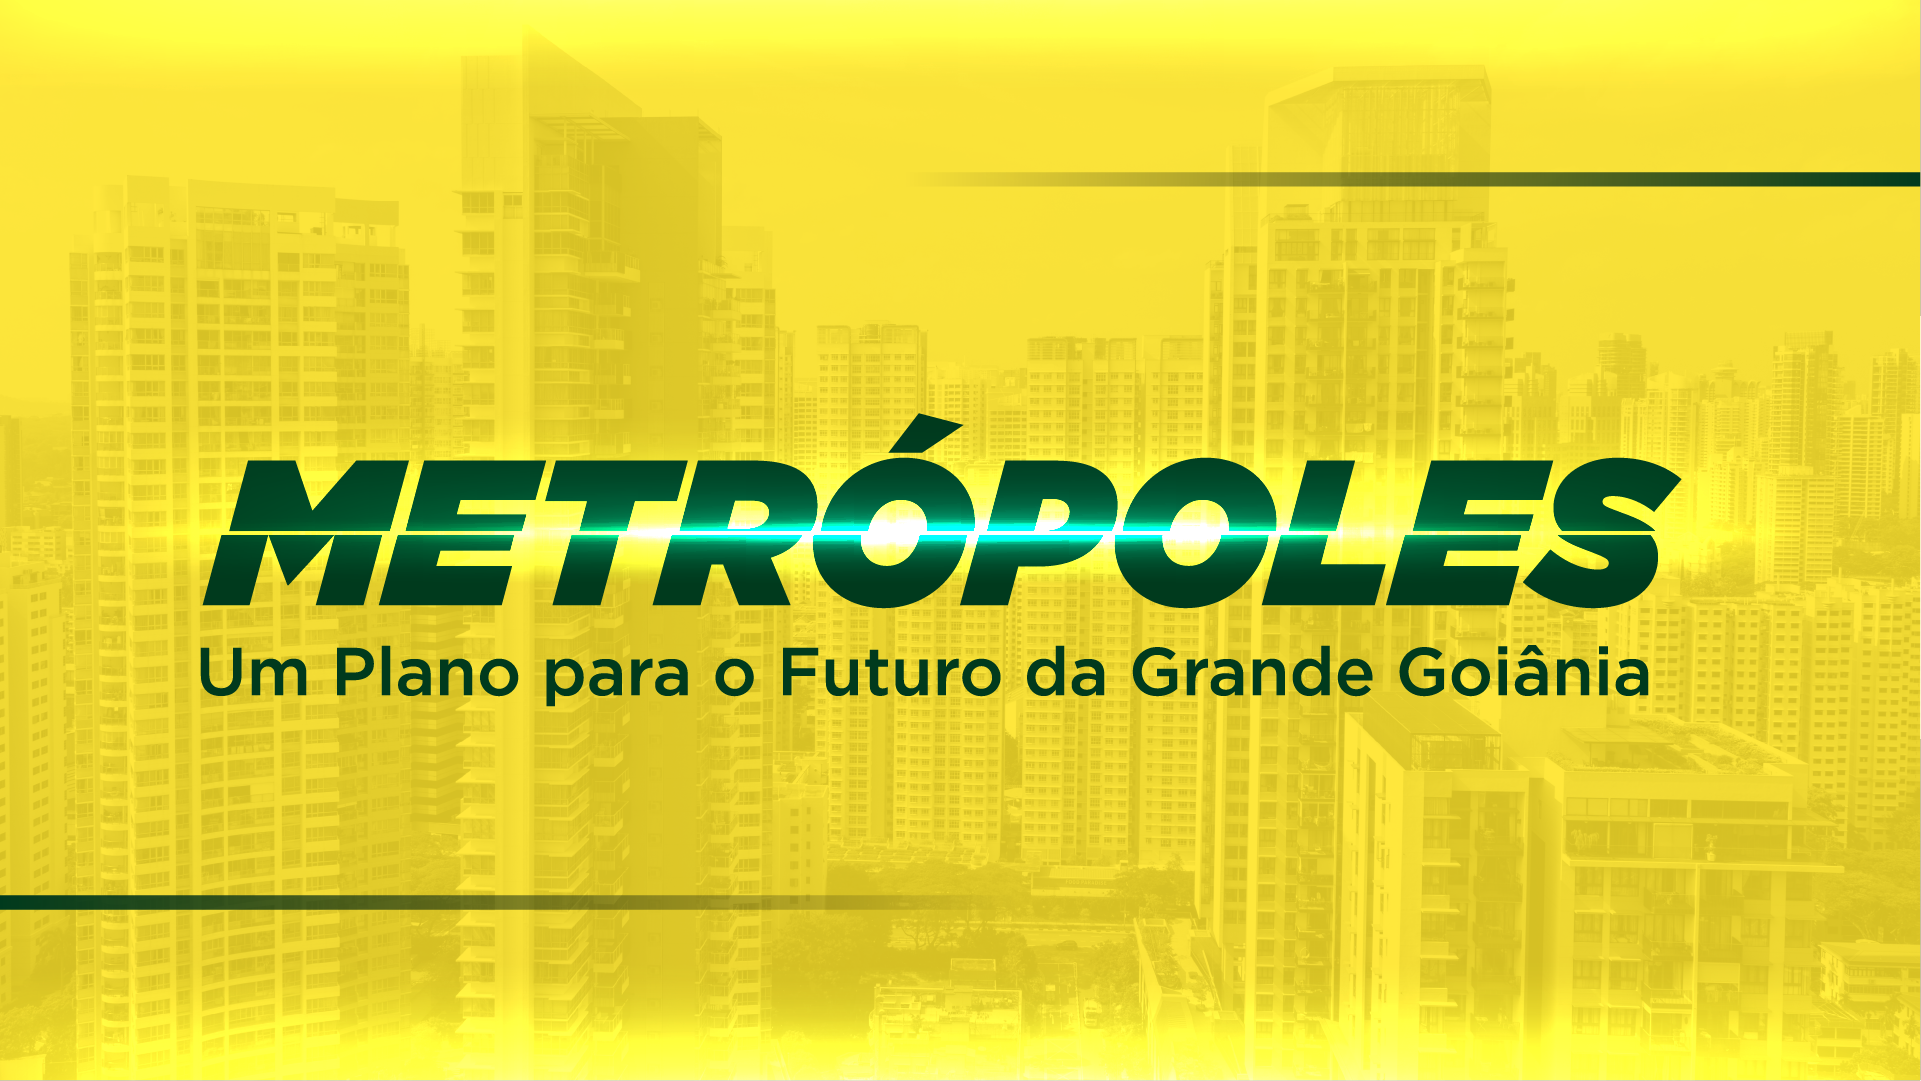 Governo de Goiás promove Seminário Metrópoles, voltado ao desenvolvimento urbano de regiões metropolitanas de Goiás